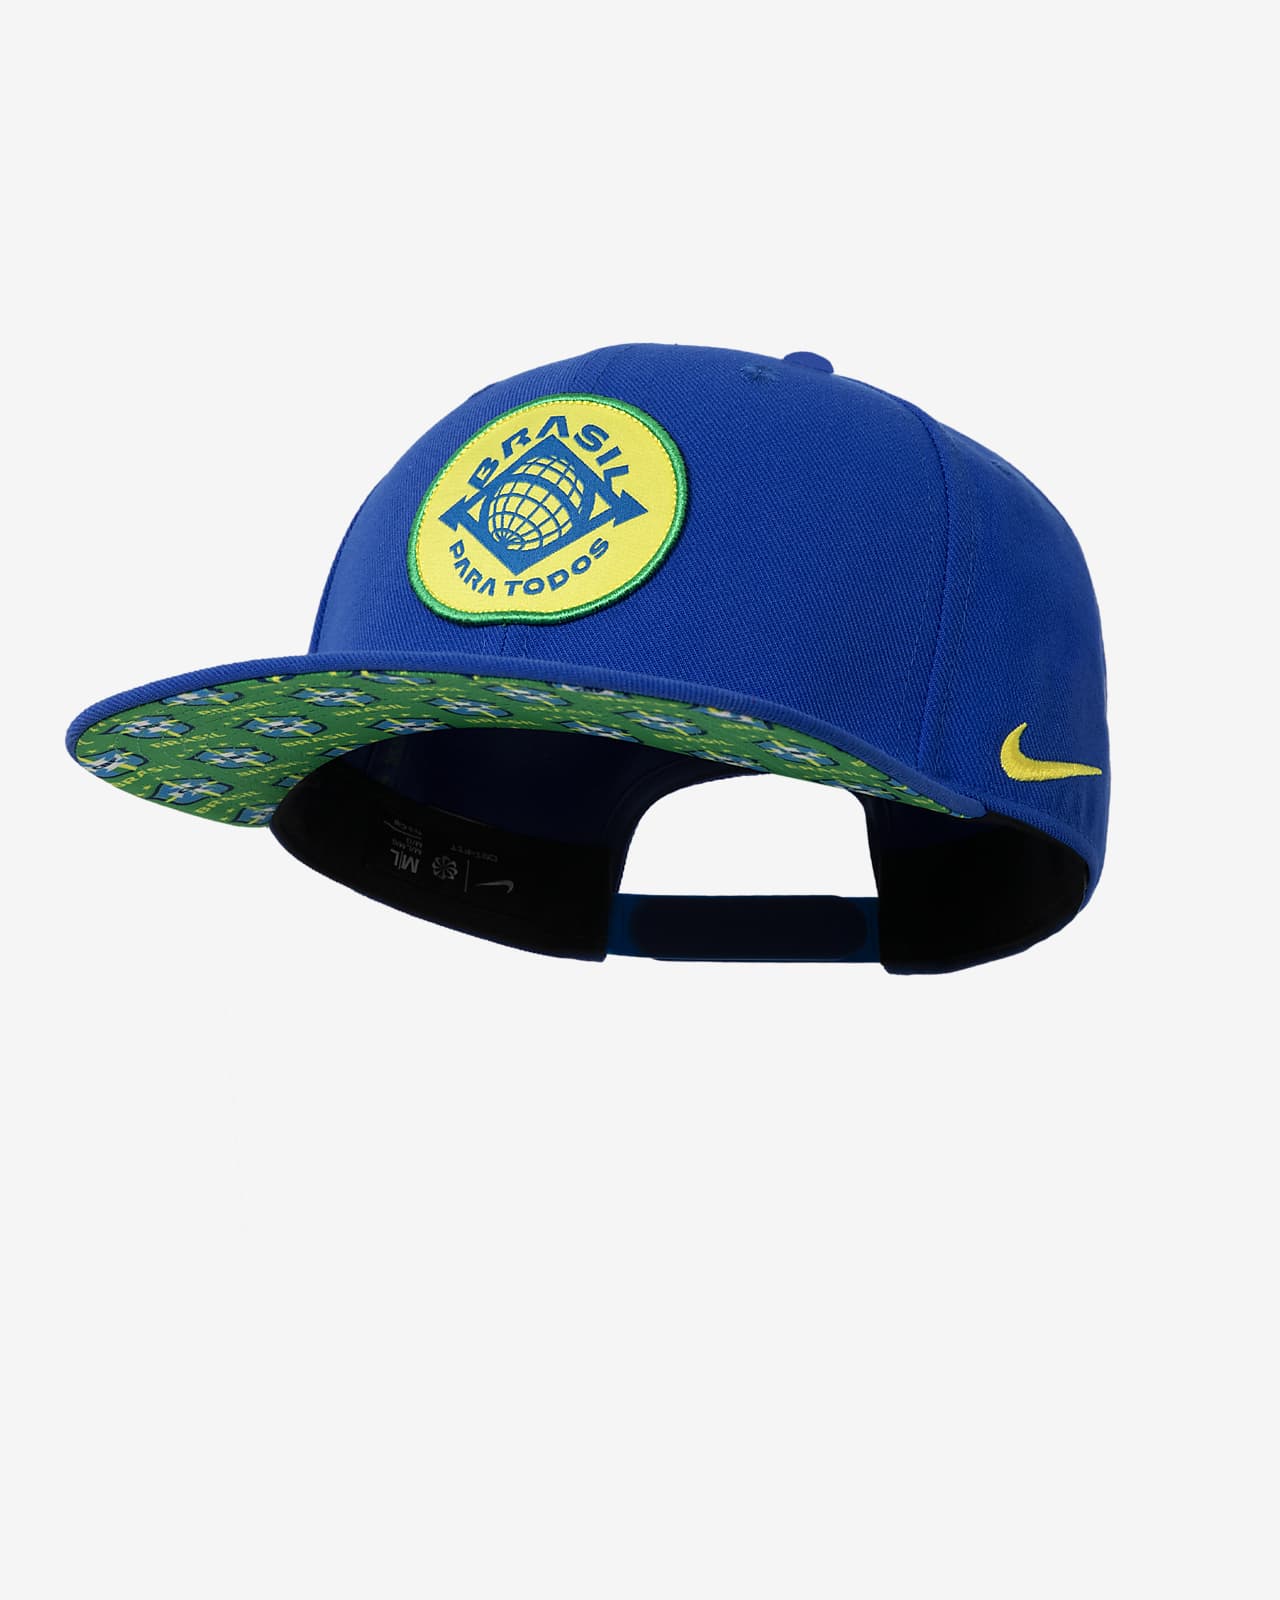 Brazil Pro Nike Soccer Cap